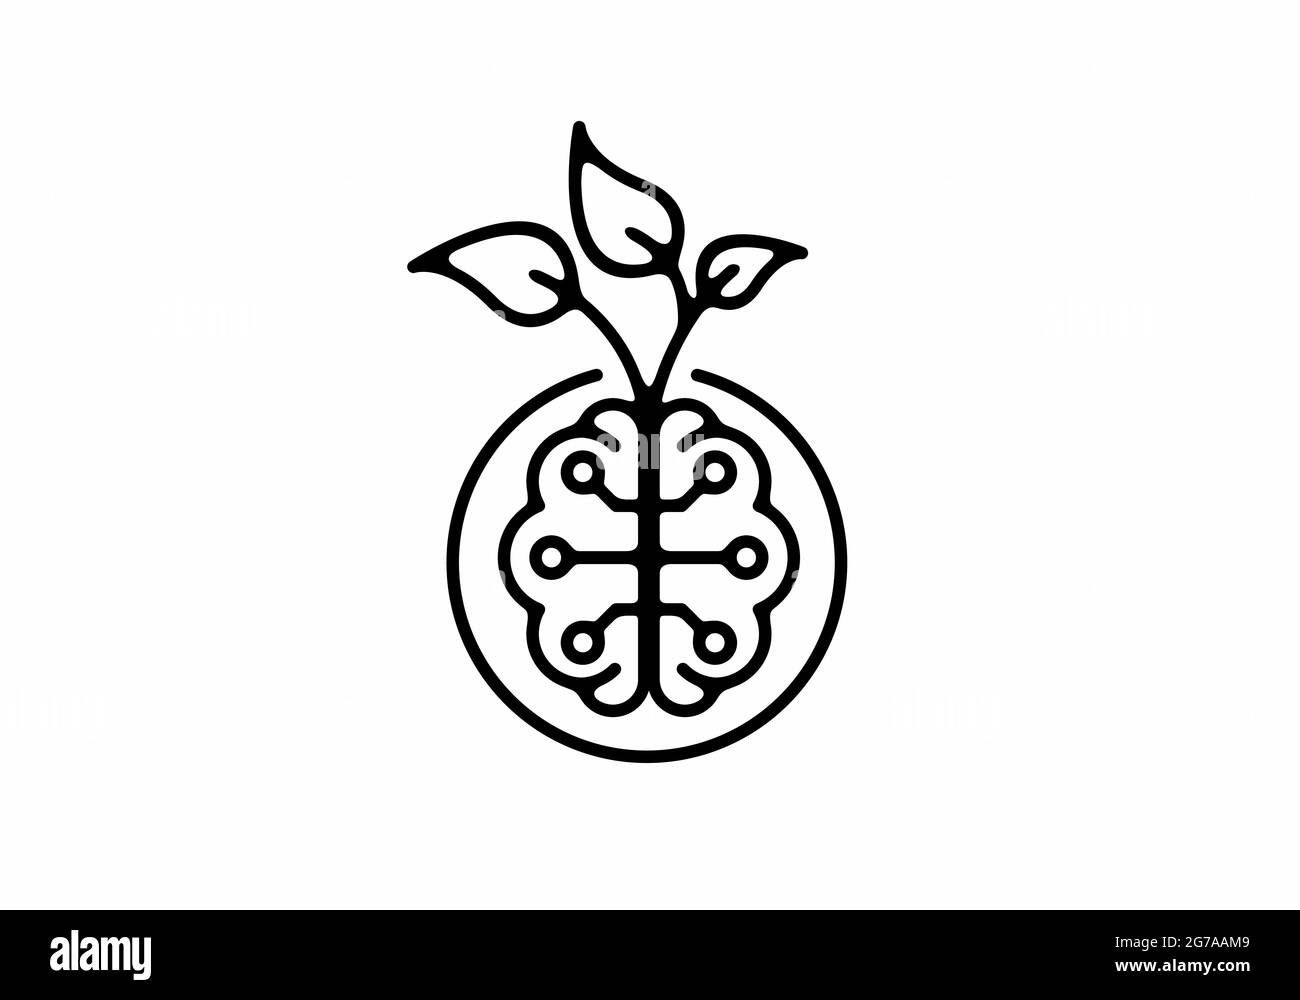 Illustrazione grafica a linee nere del design del cervello e delle foglie Illustrazione Vettoriale